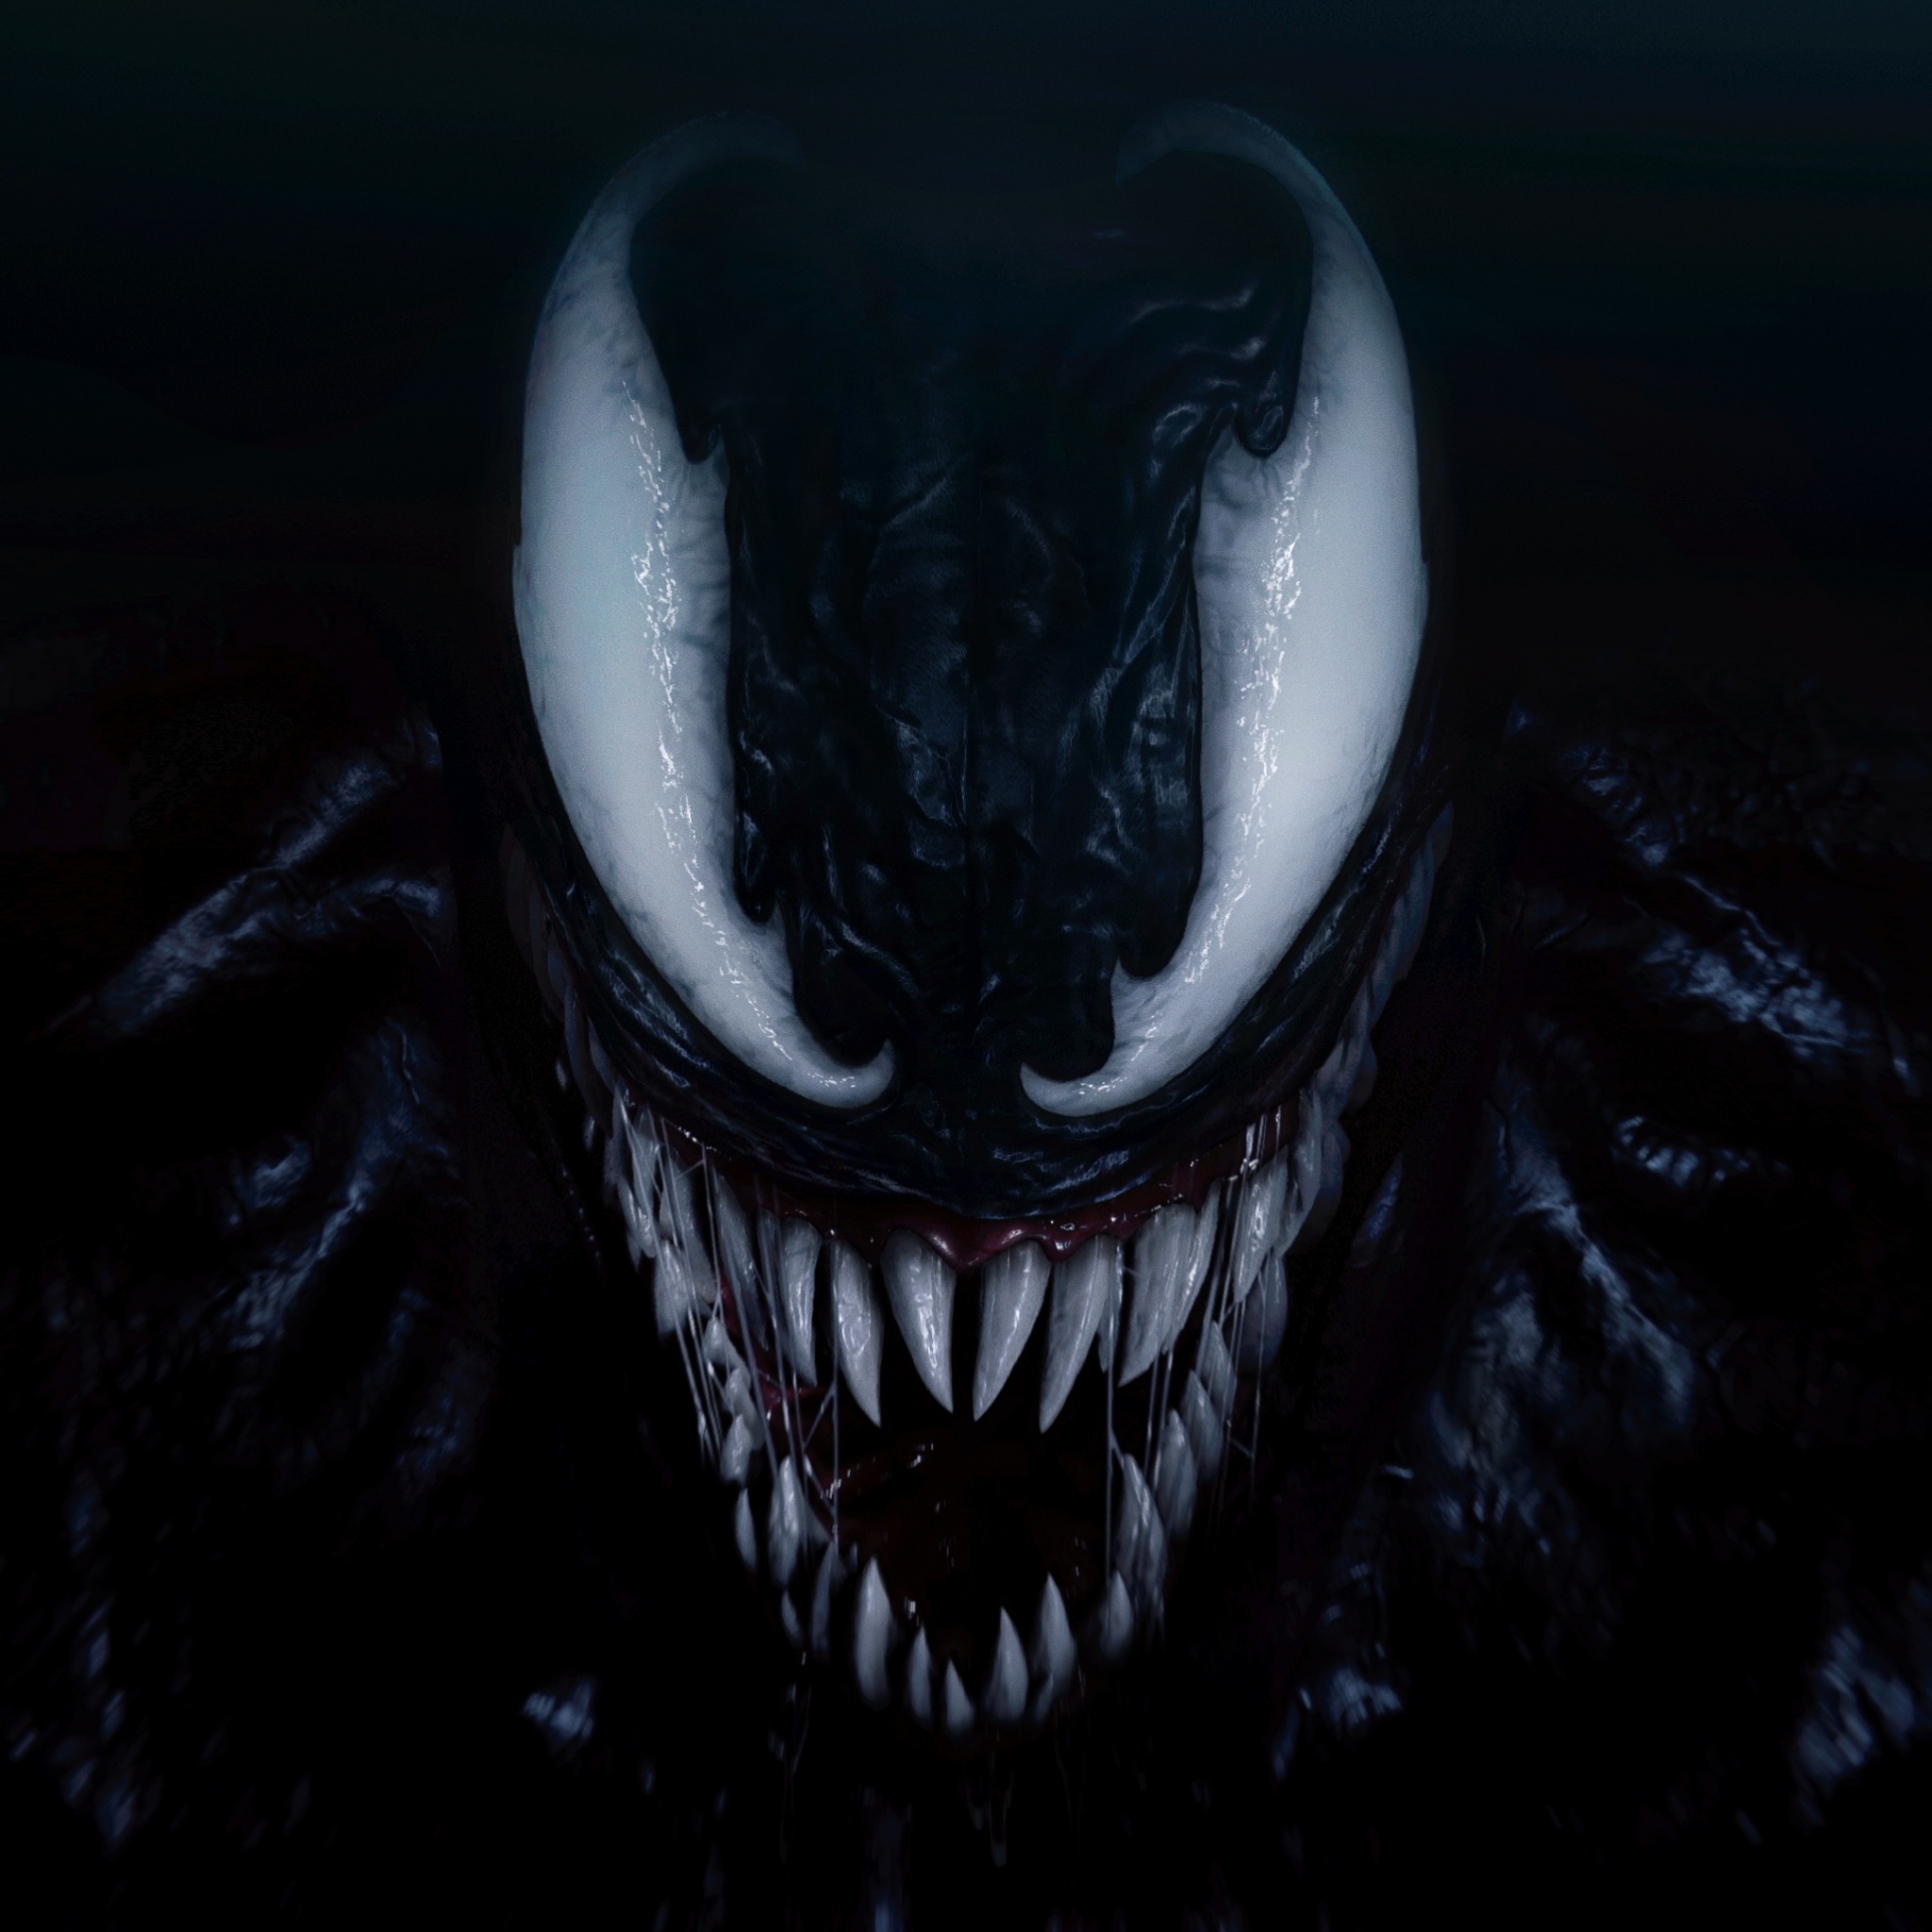 Bạn đang tìm kiếm một hình nền đa sắc thái màu đen hoặc tối? Venom Wallpaper 4K, Black/Dark sẽ đáp ứng được nhu cầu của bạn, mang lại cho màn hình thiết bị của bạn một vẻ đẹp hoàn hảo và đầy chất bí ẩn. Hãy tận hưởng một trải nghiệm độc đáo với Venom Wallapper 4K đầy sức hấp dẫn này.